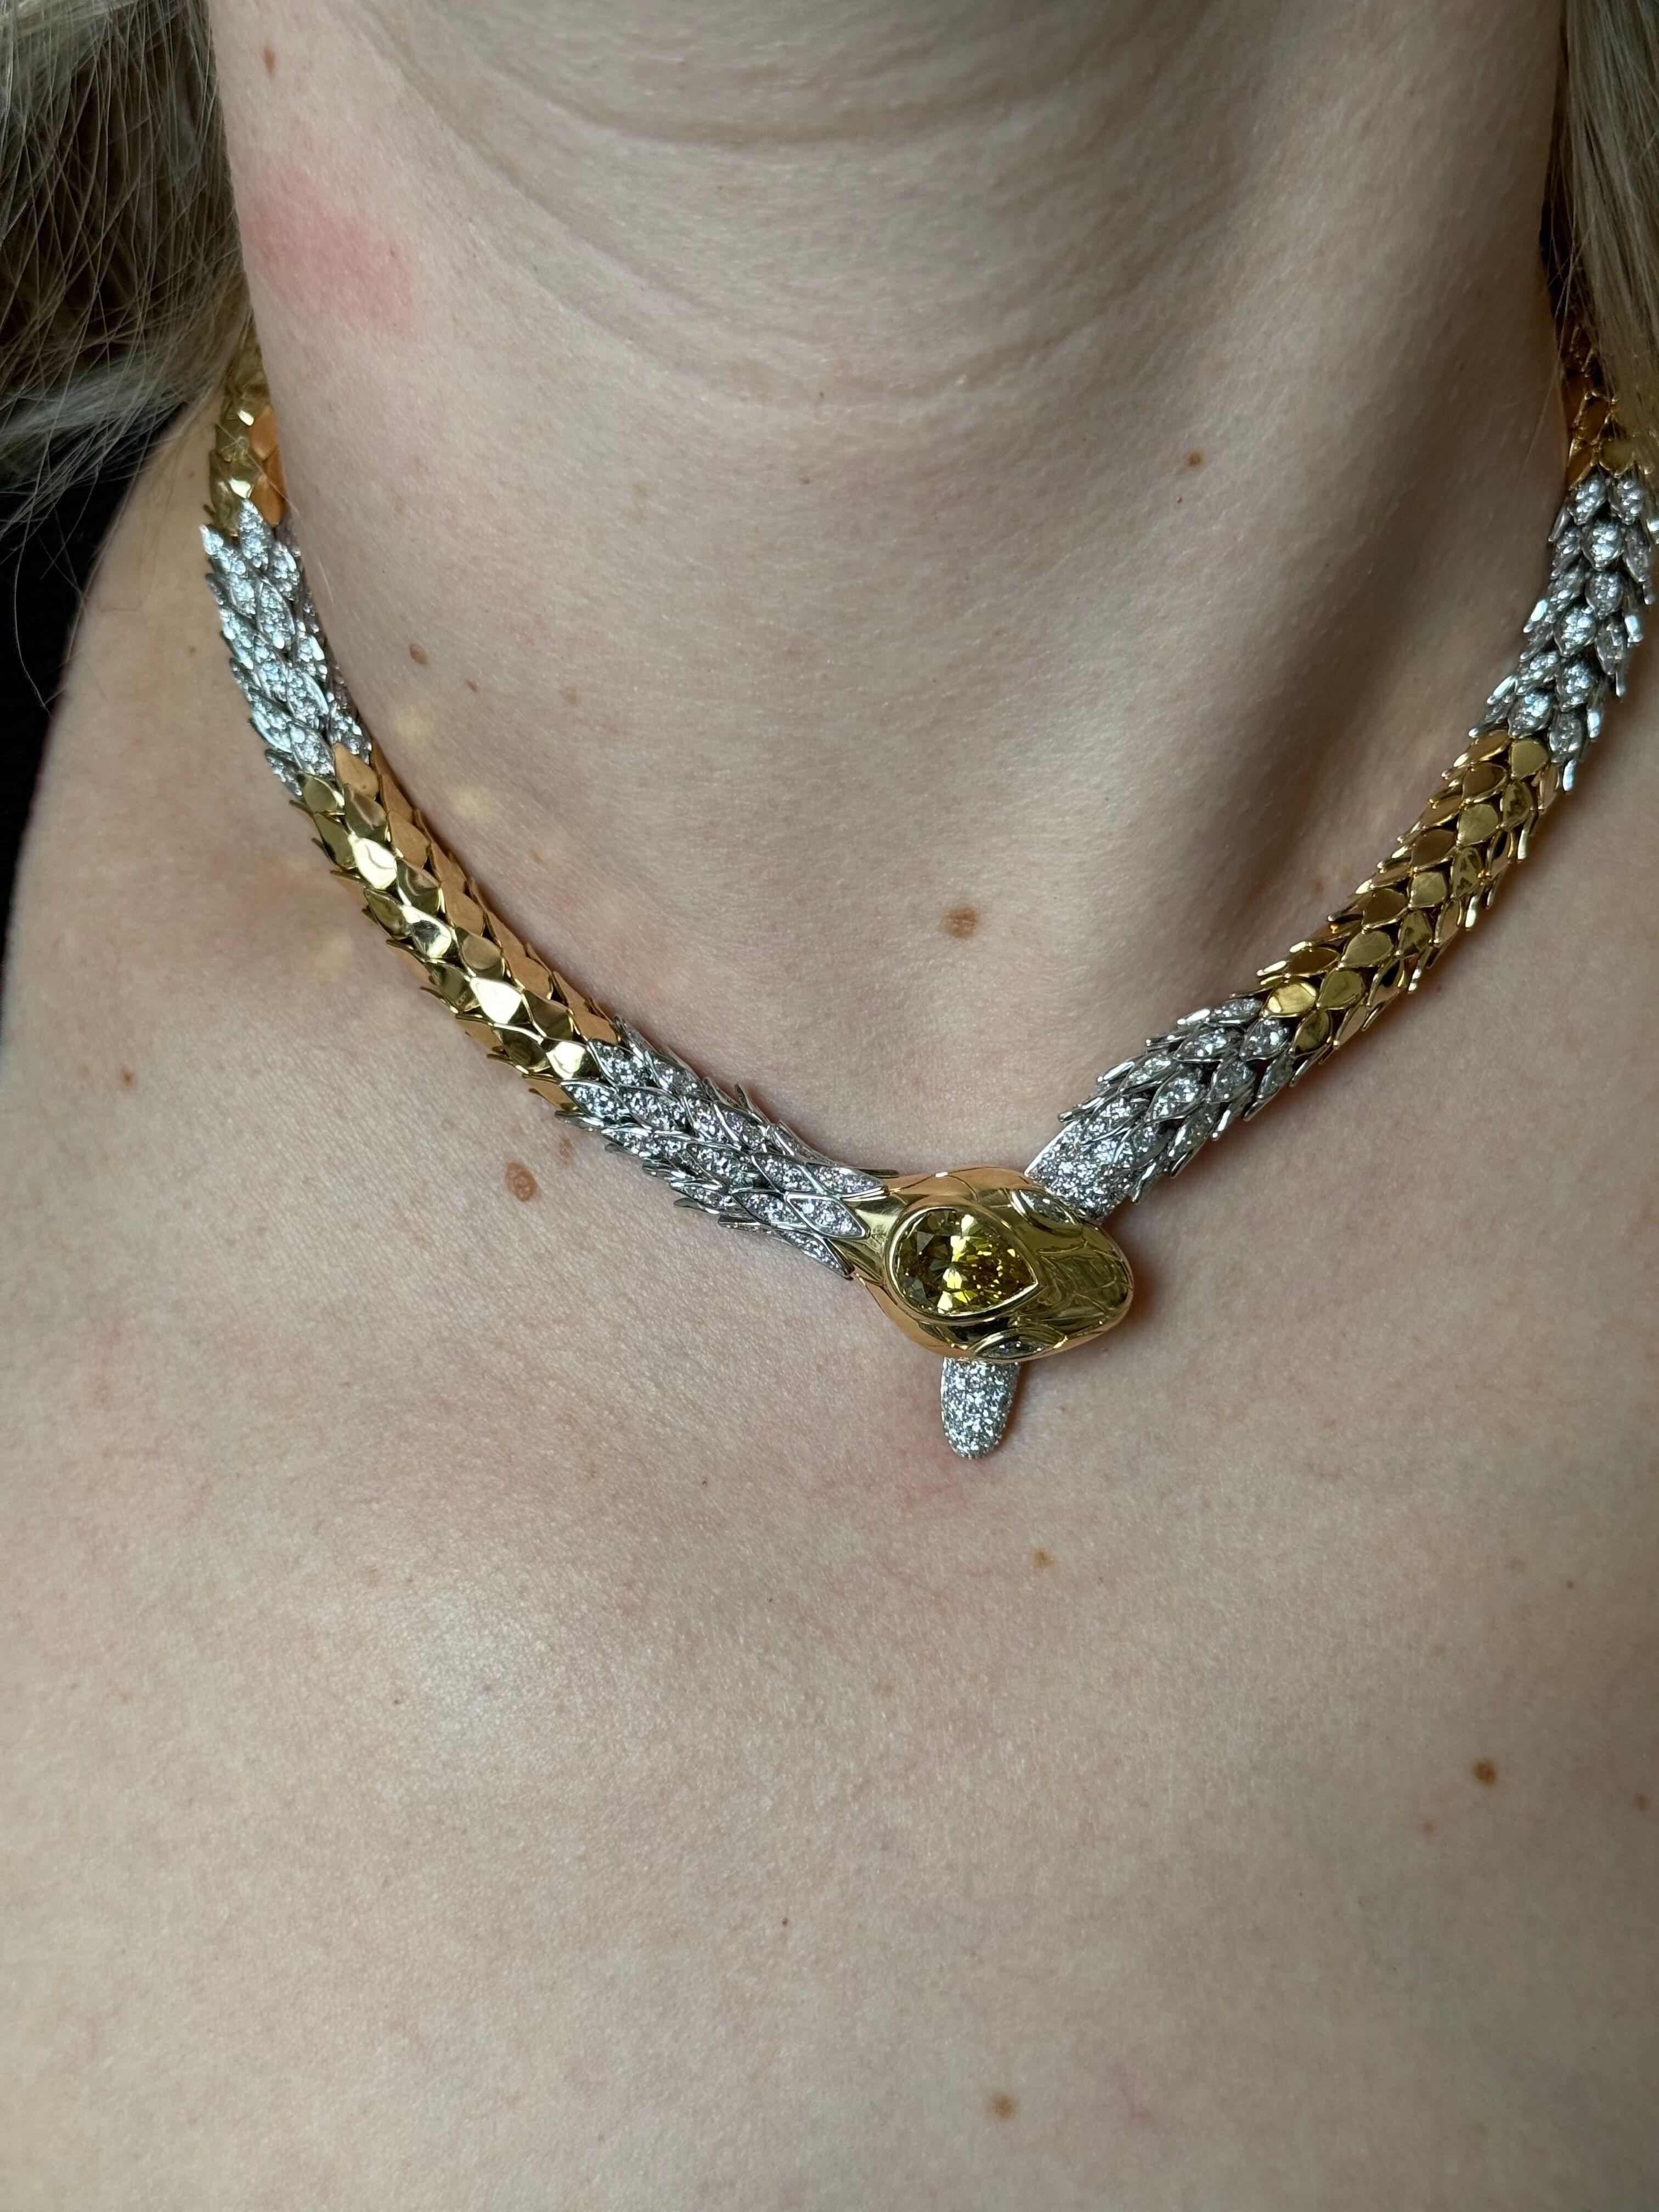 Eine beeindruckende 18k Gold und Platin Schlange Halskette von Faraone, mit ca. 6,00ctw G/VS Diamanten auf die Kette, und ein Zentrum fancy Cognac Birne Form Diamant - ca. 3,60ct VS-Si1. Halskette ist 17